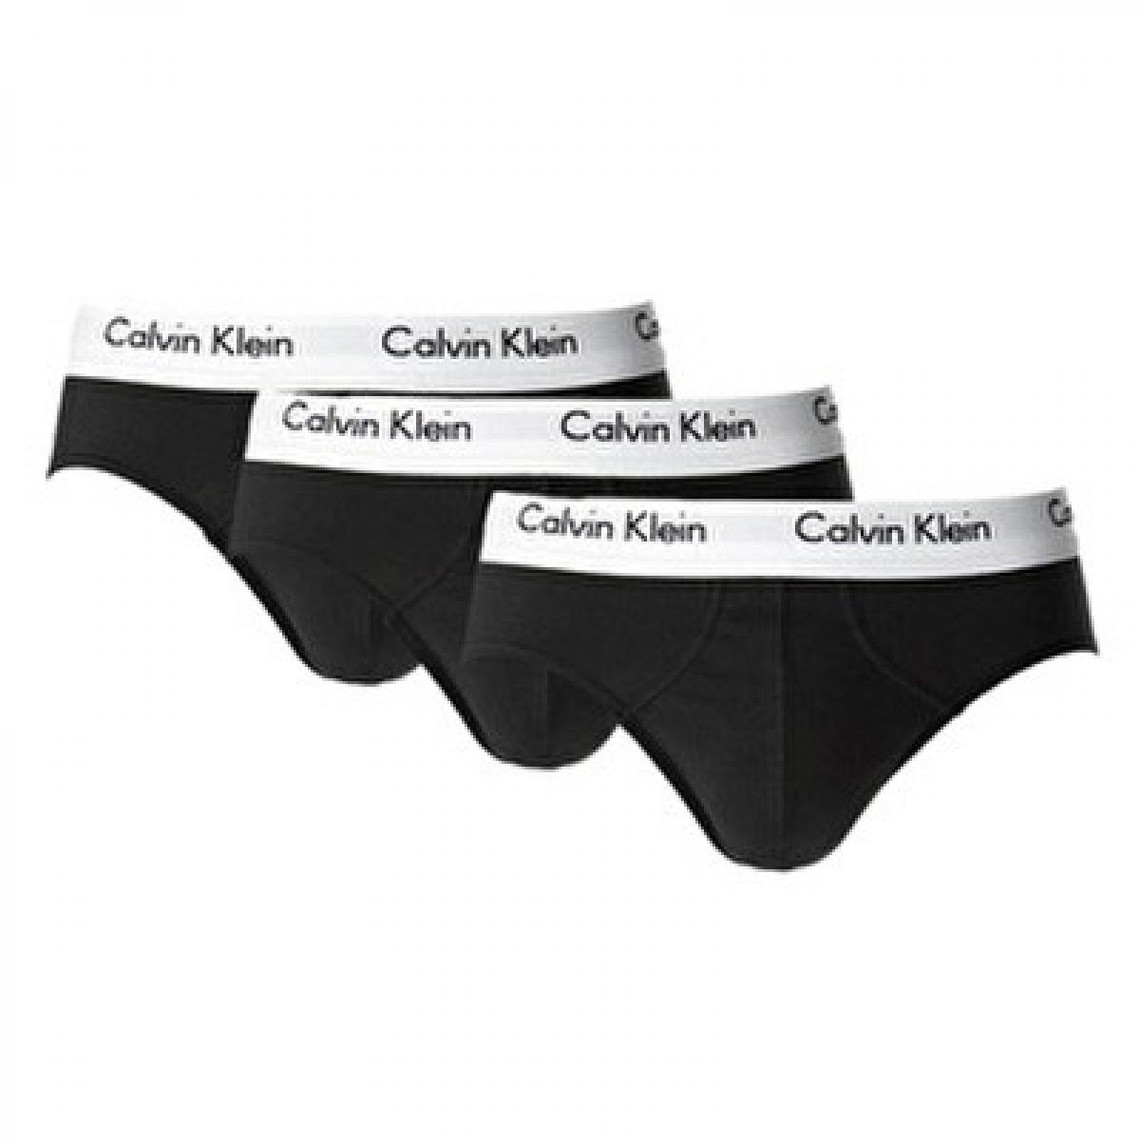 Homme Vêtements Sous-vêtements Slips et boxers Slip Calvin Klein pour homme en coloris Noir 